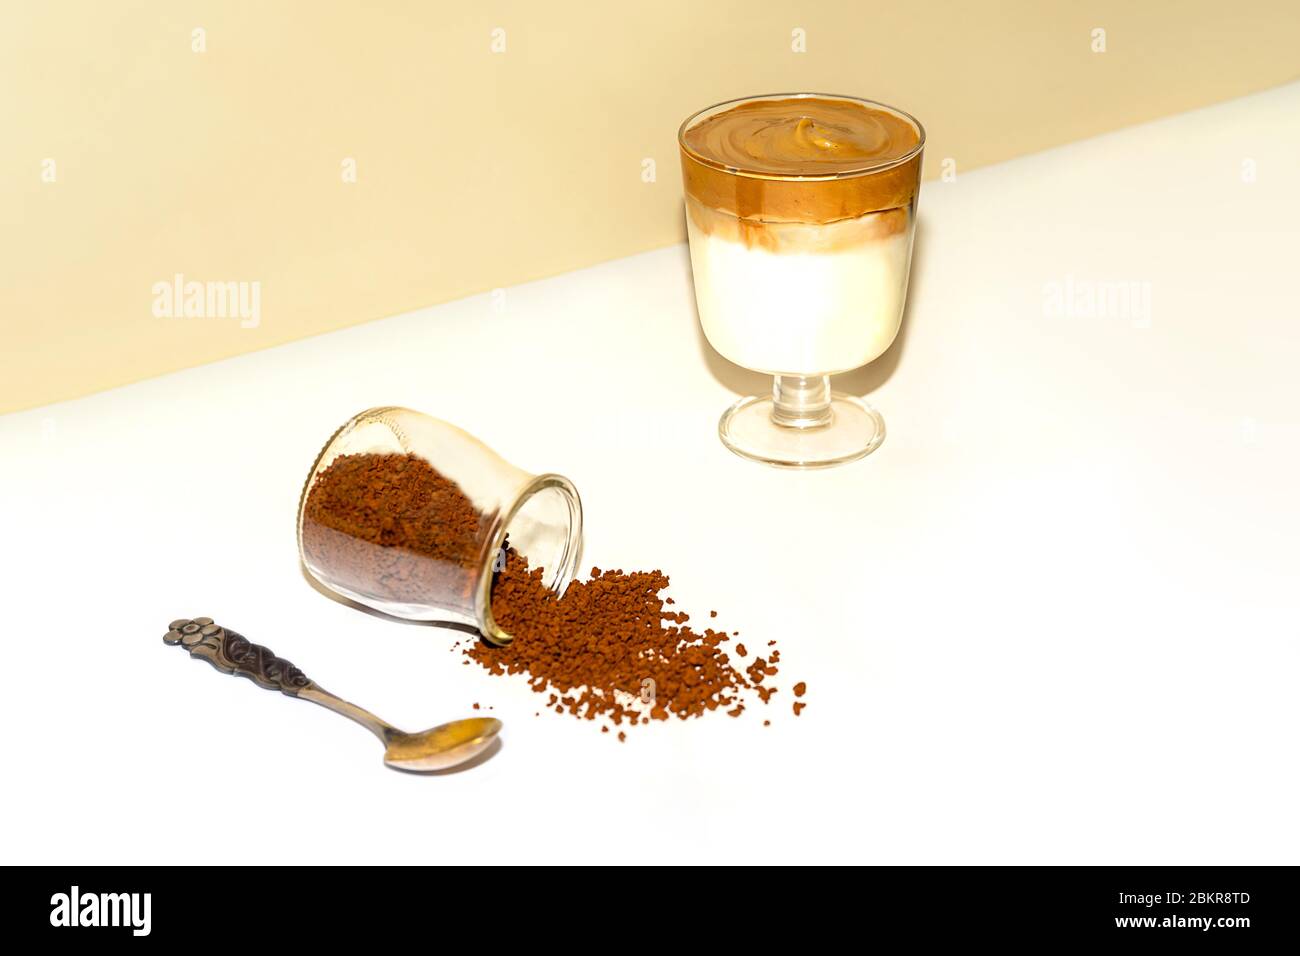 Eine Tasse eisgekühlter Dalgona Kaffee, modischer flauschiger cremiger Schlagkaffee auf einem trendigen farbigen Hintergrund. Stockfoto